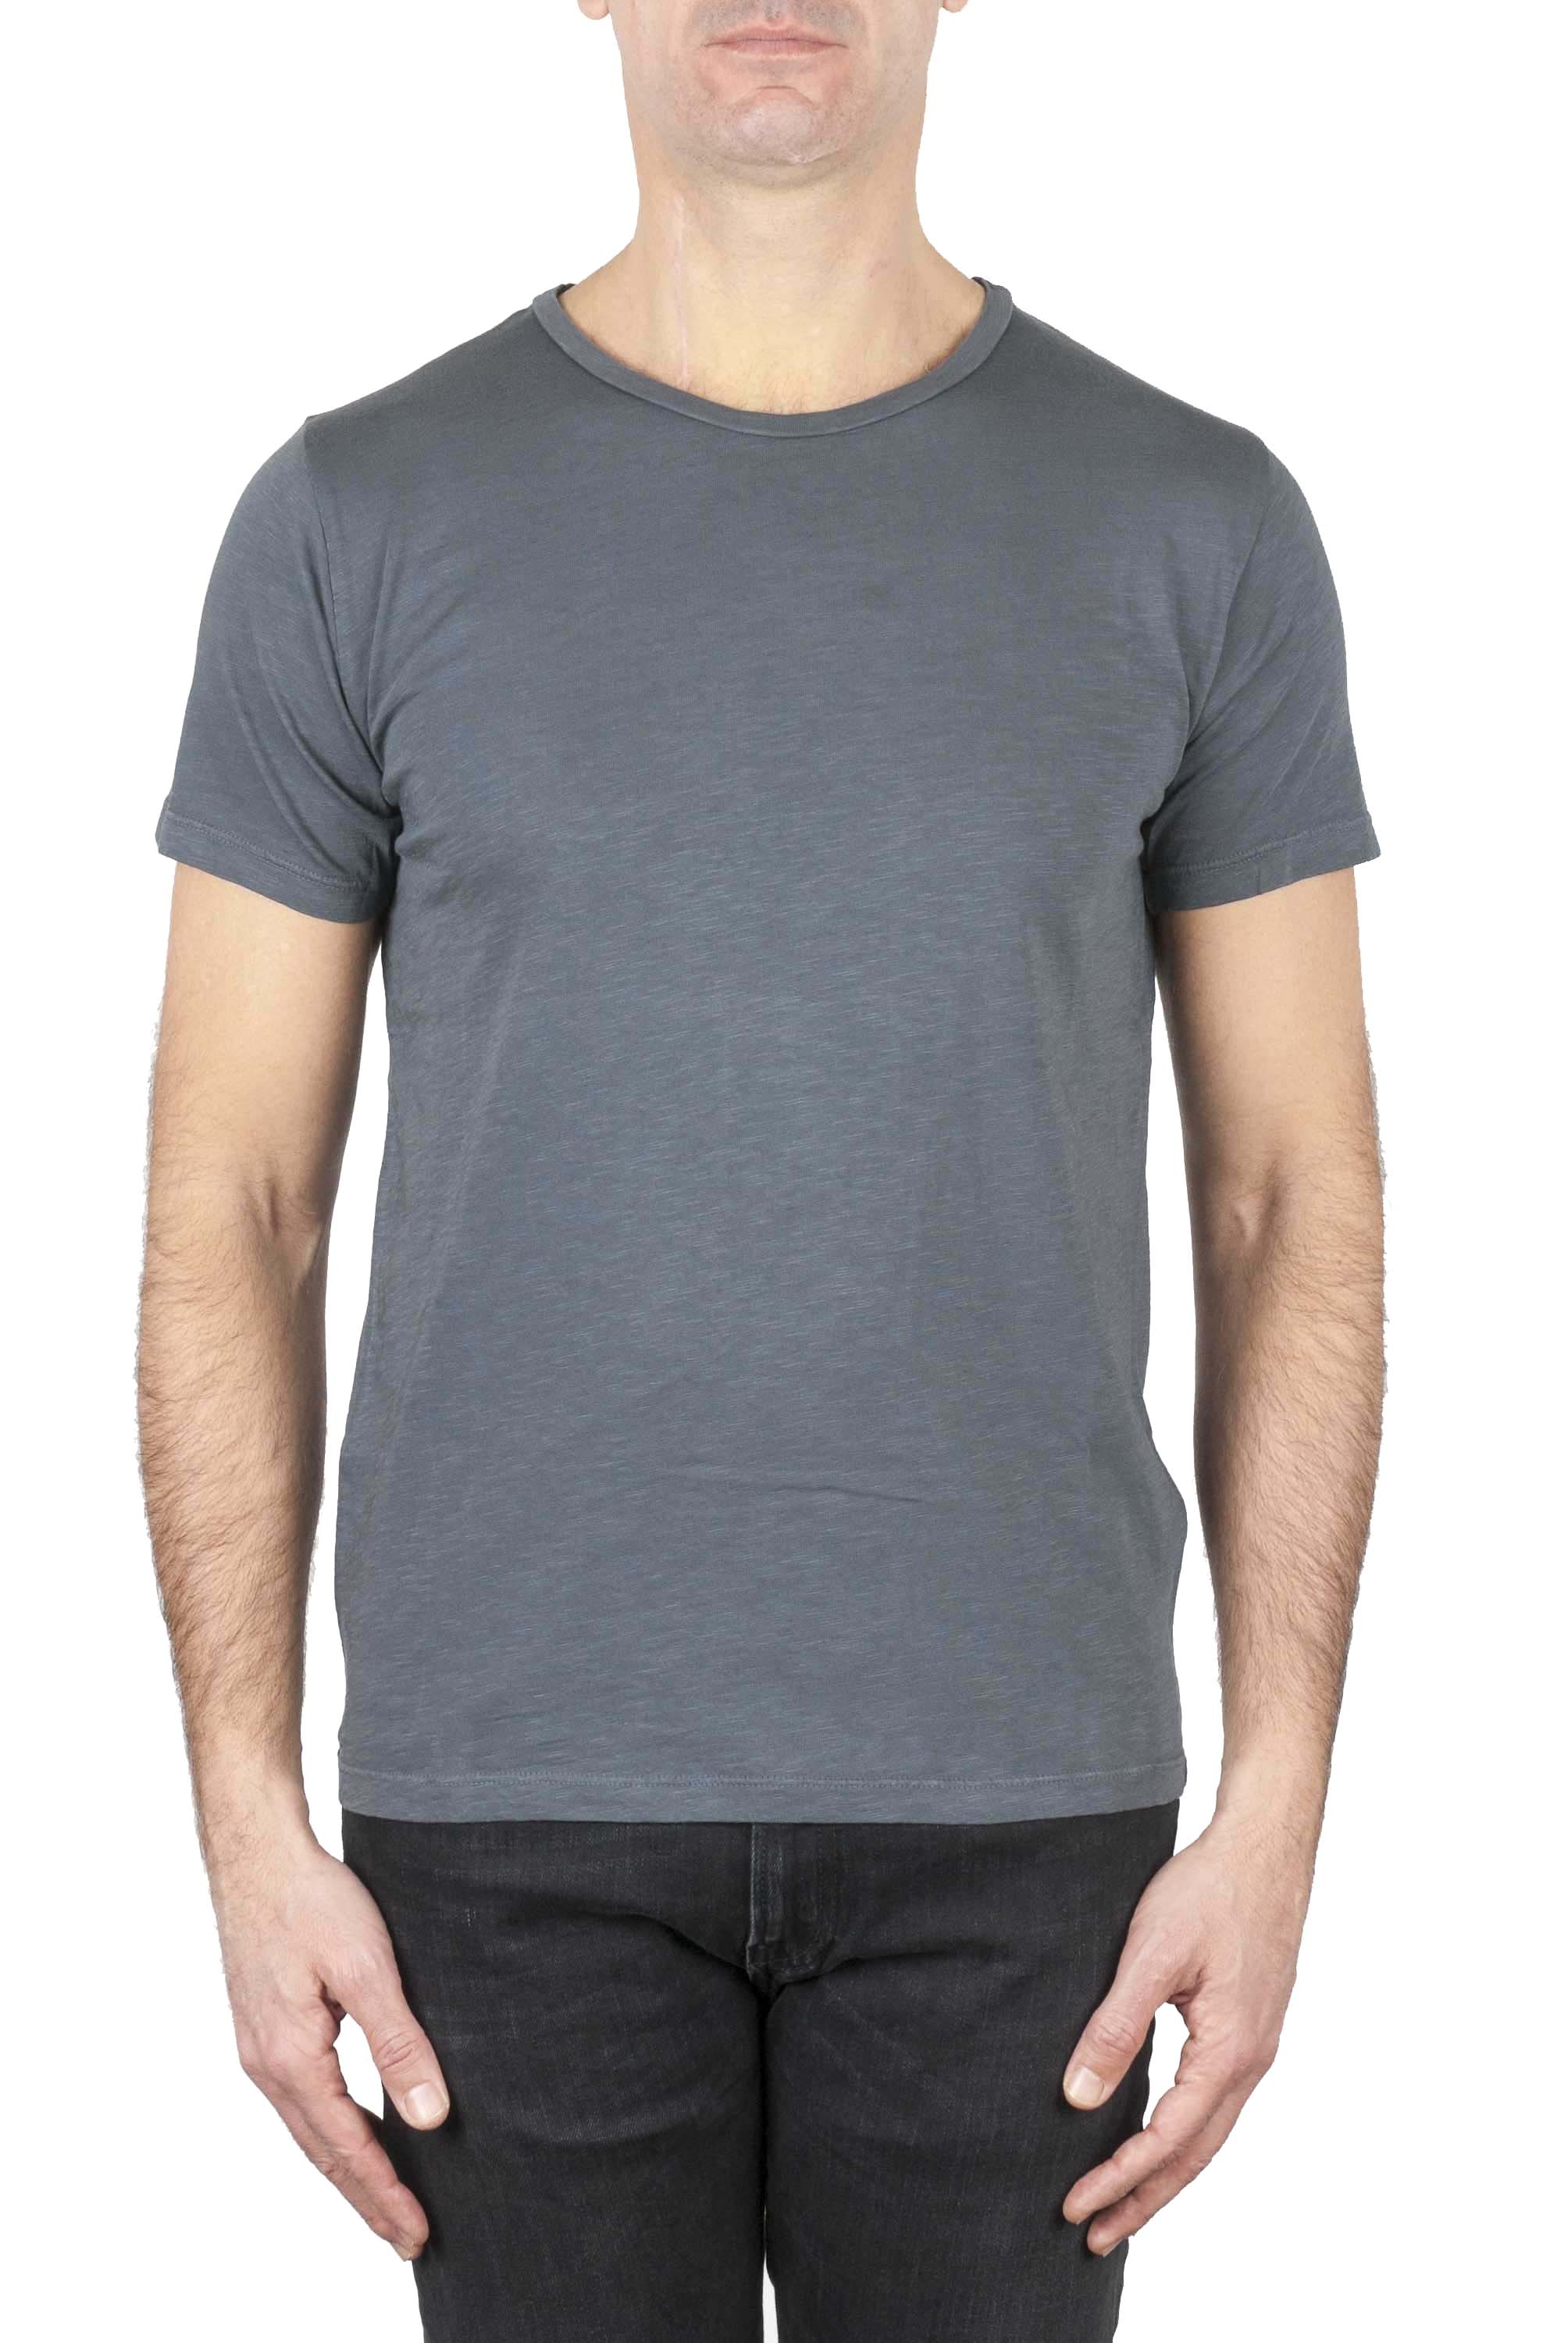 SBU 01641_19AW T-shirt girocollo aperto in cotone fiammato grigio scuro 01